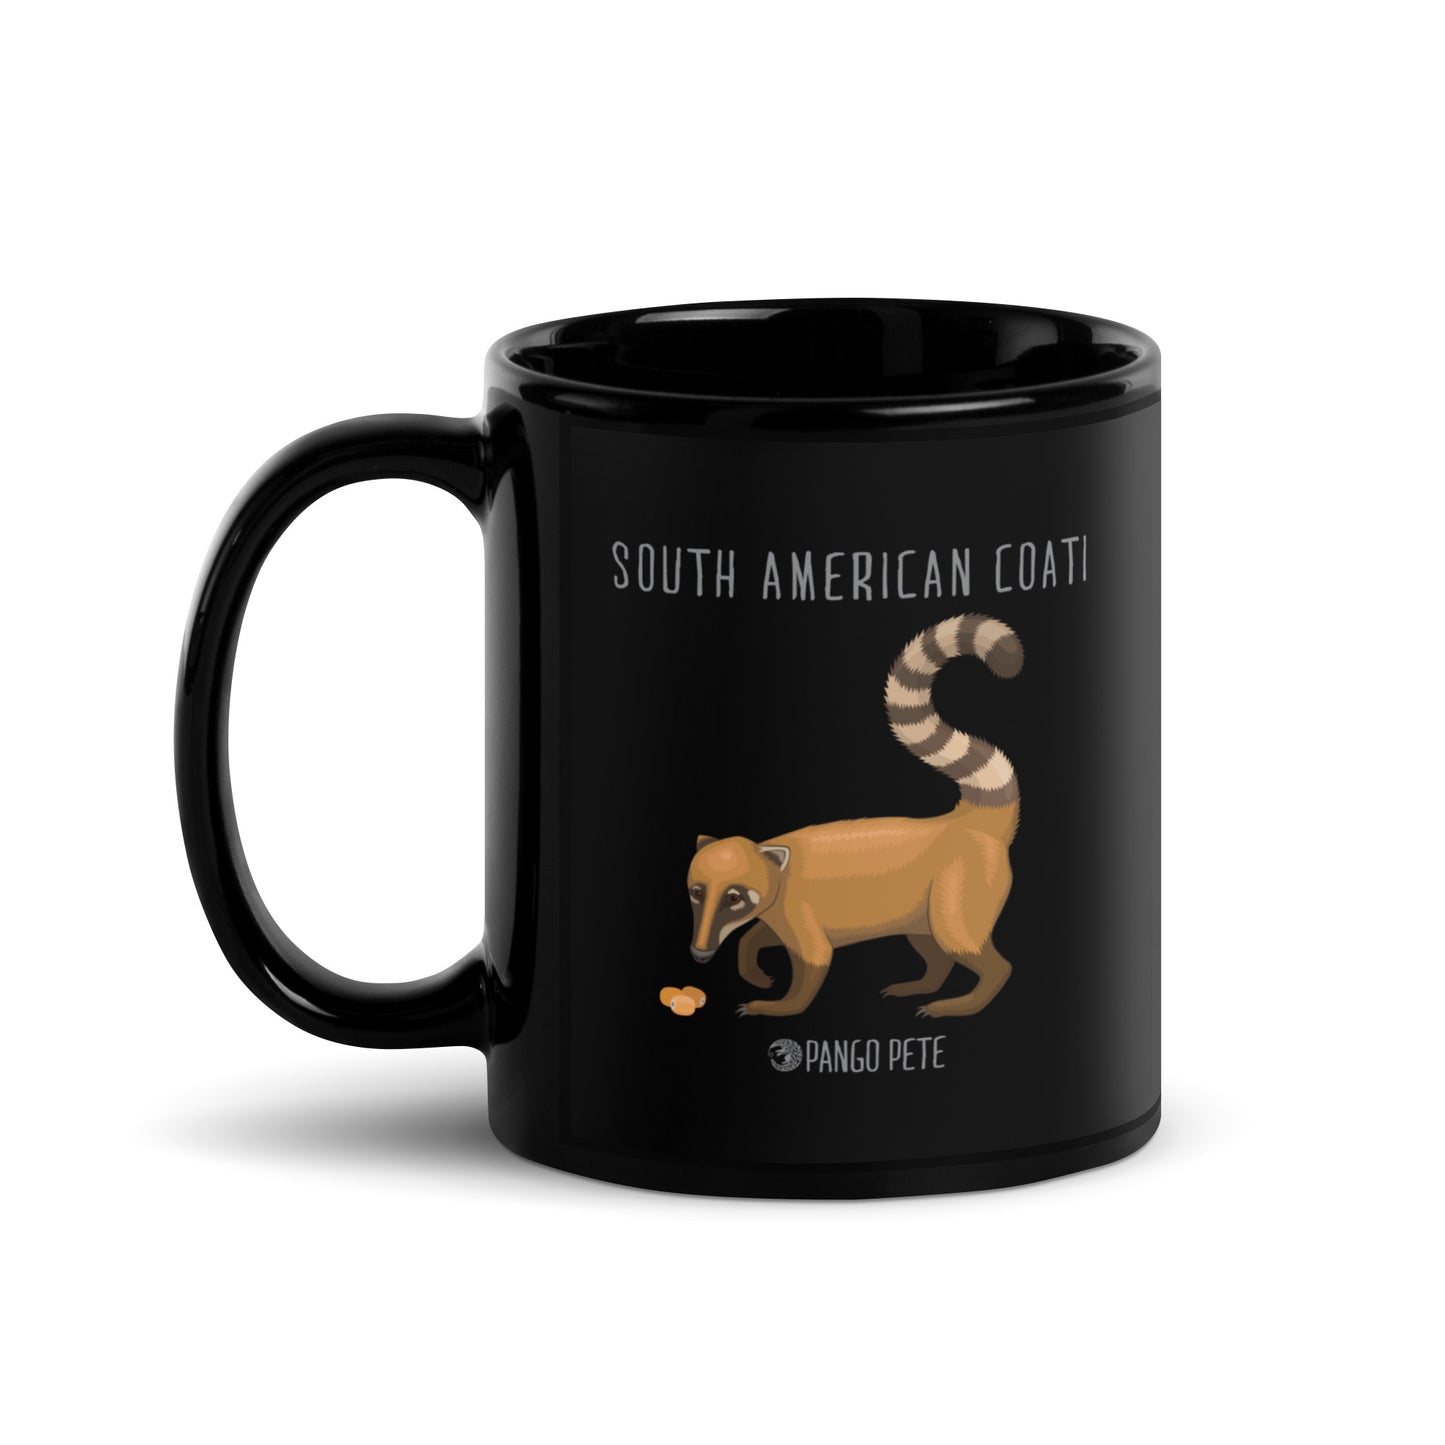 South American Coati Mug — Black, 11 oz.